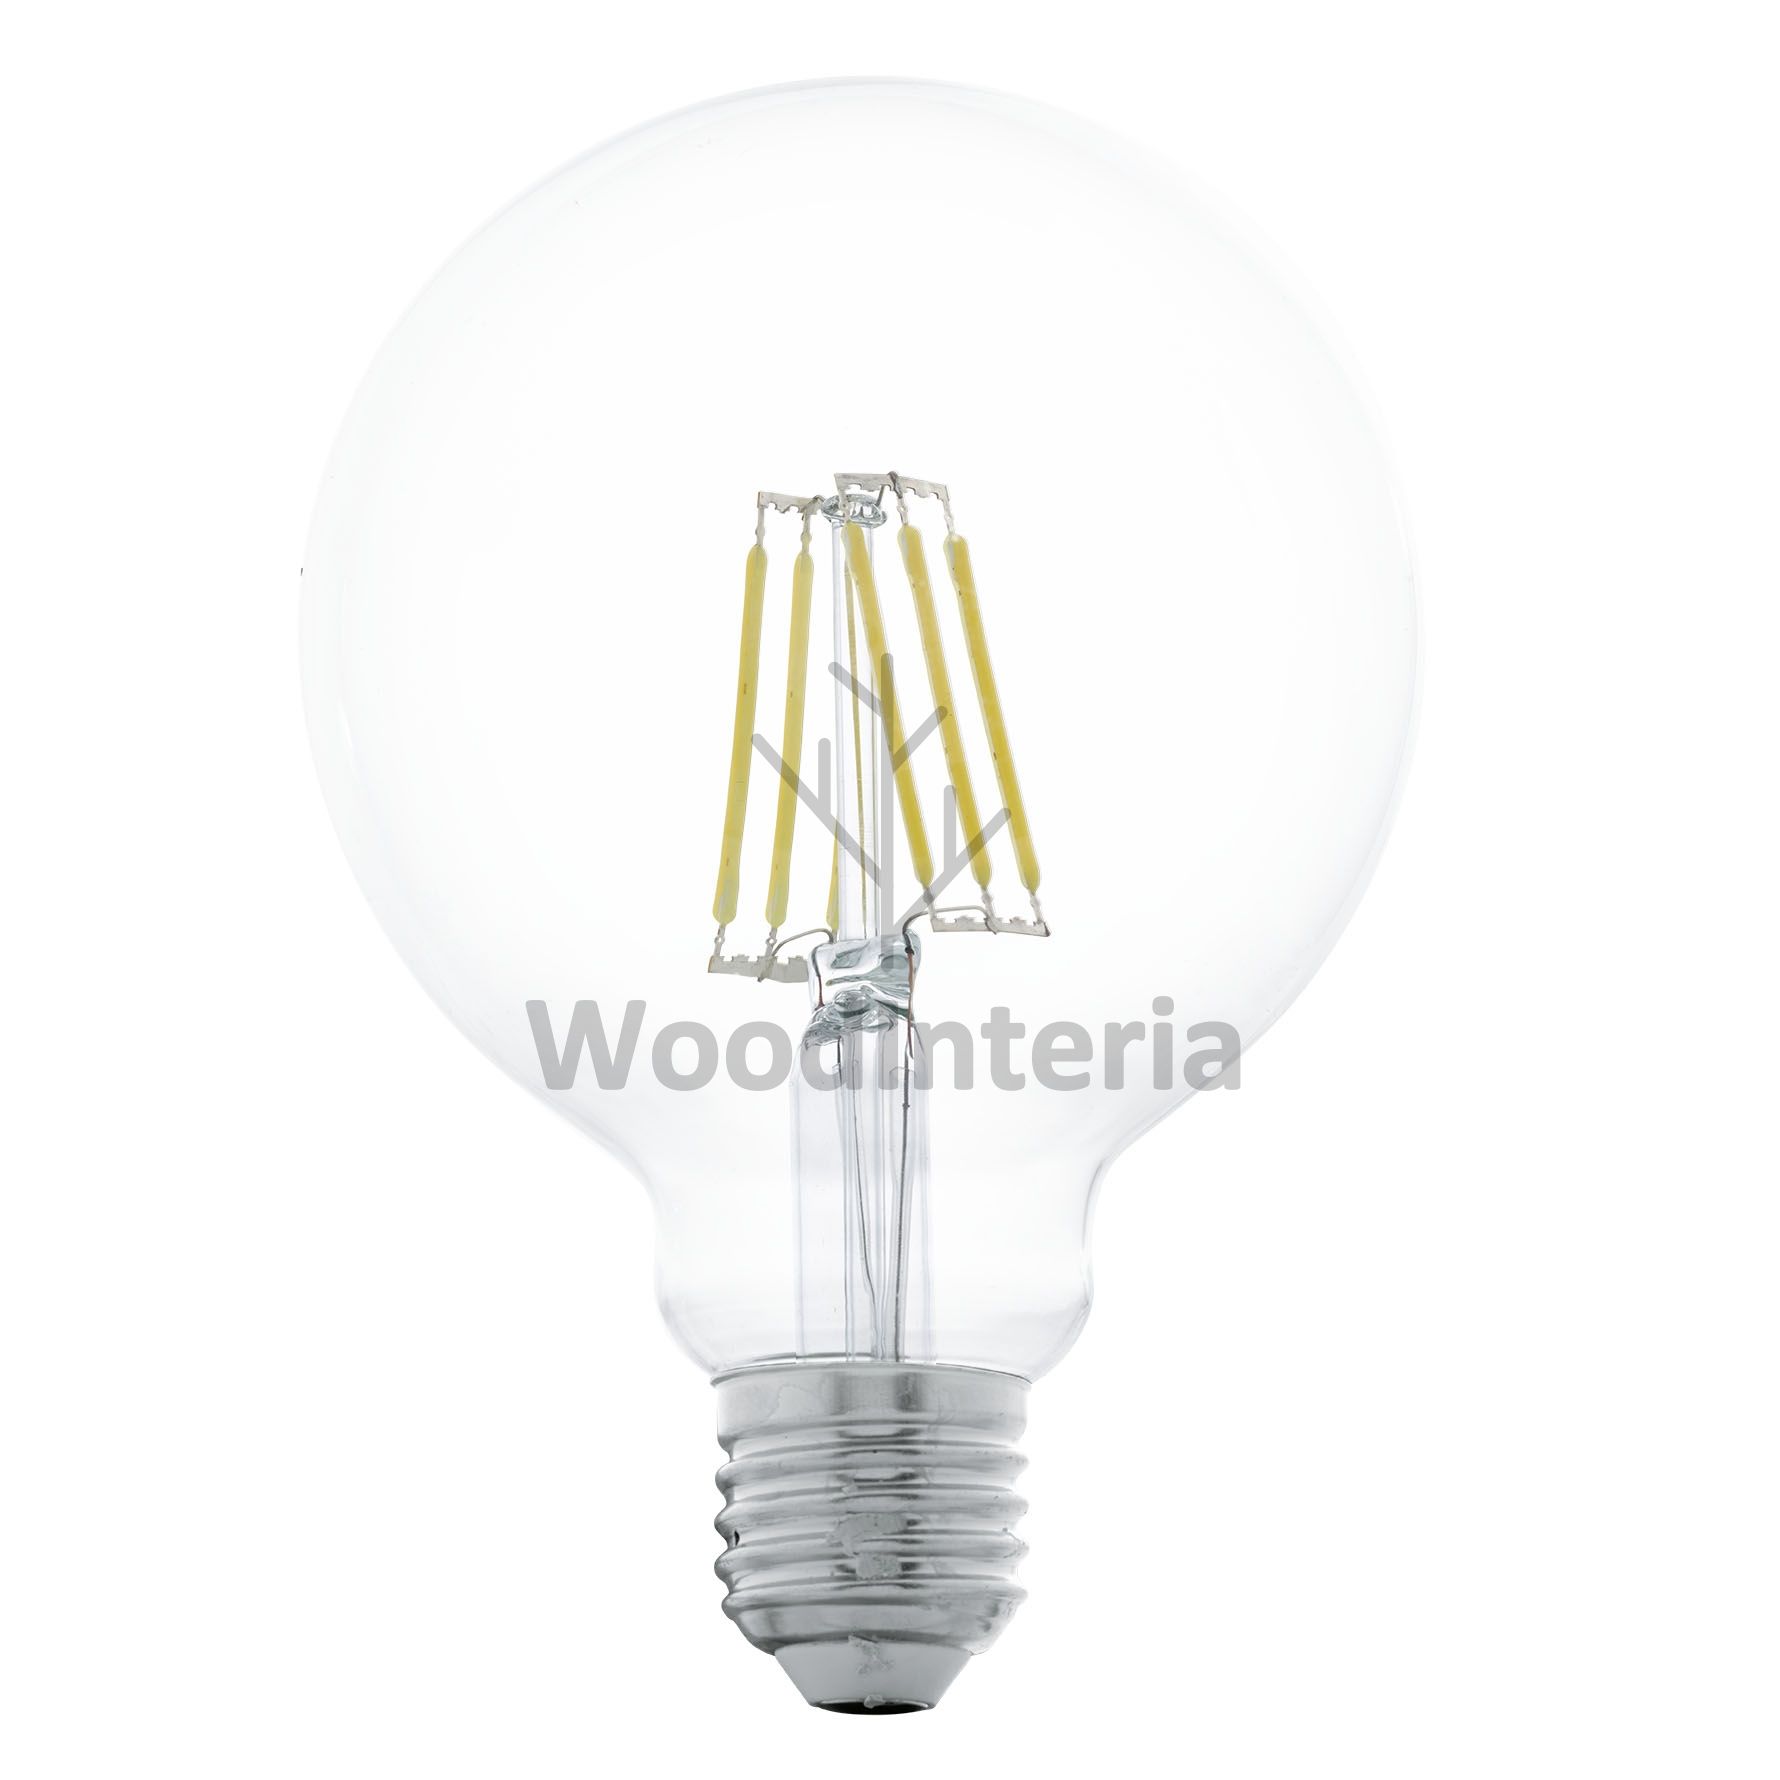 фото лампочка clean bulb #4 в скандинавском интерьере лофт эко | WoodInteria